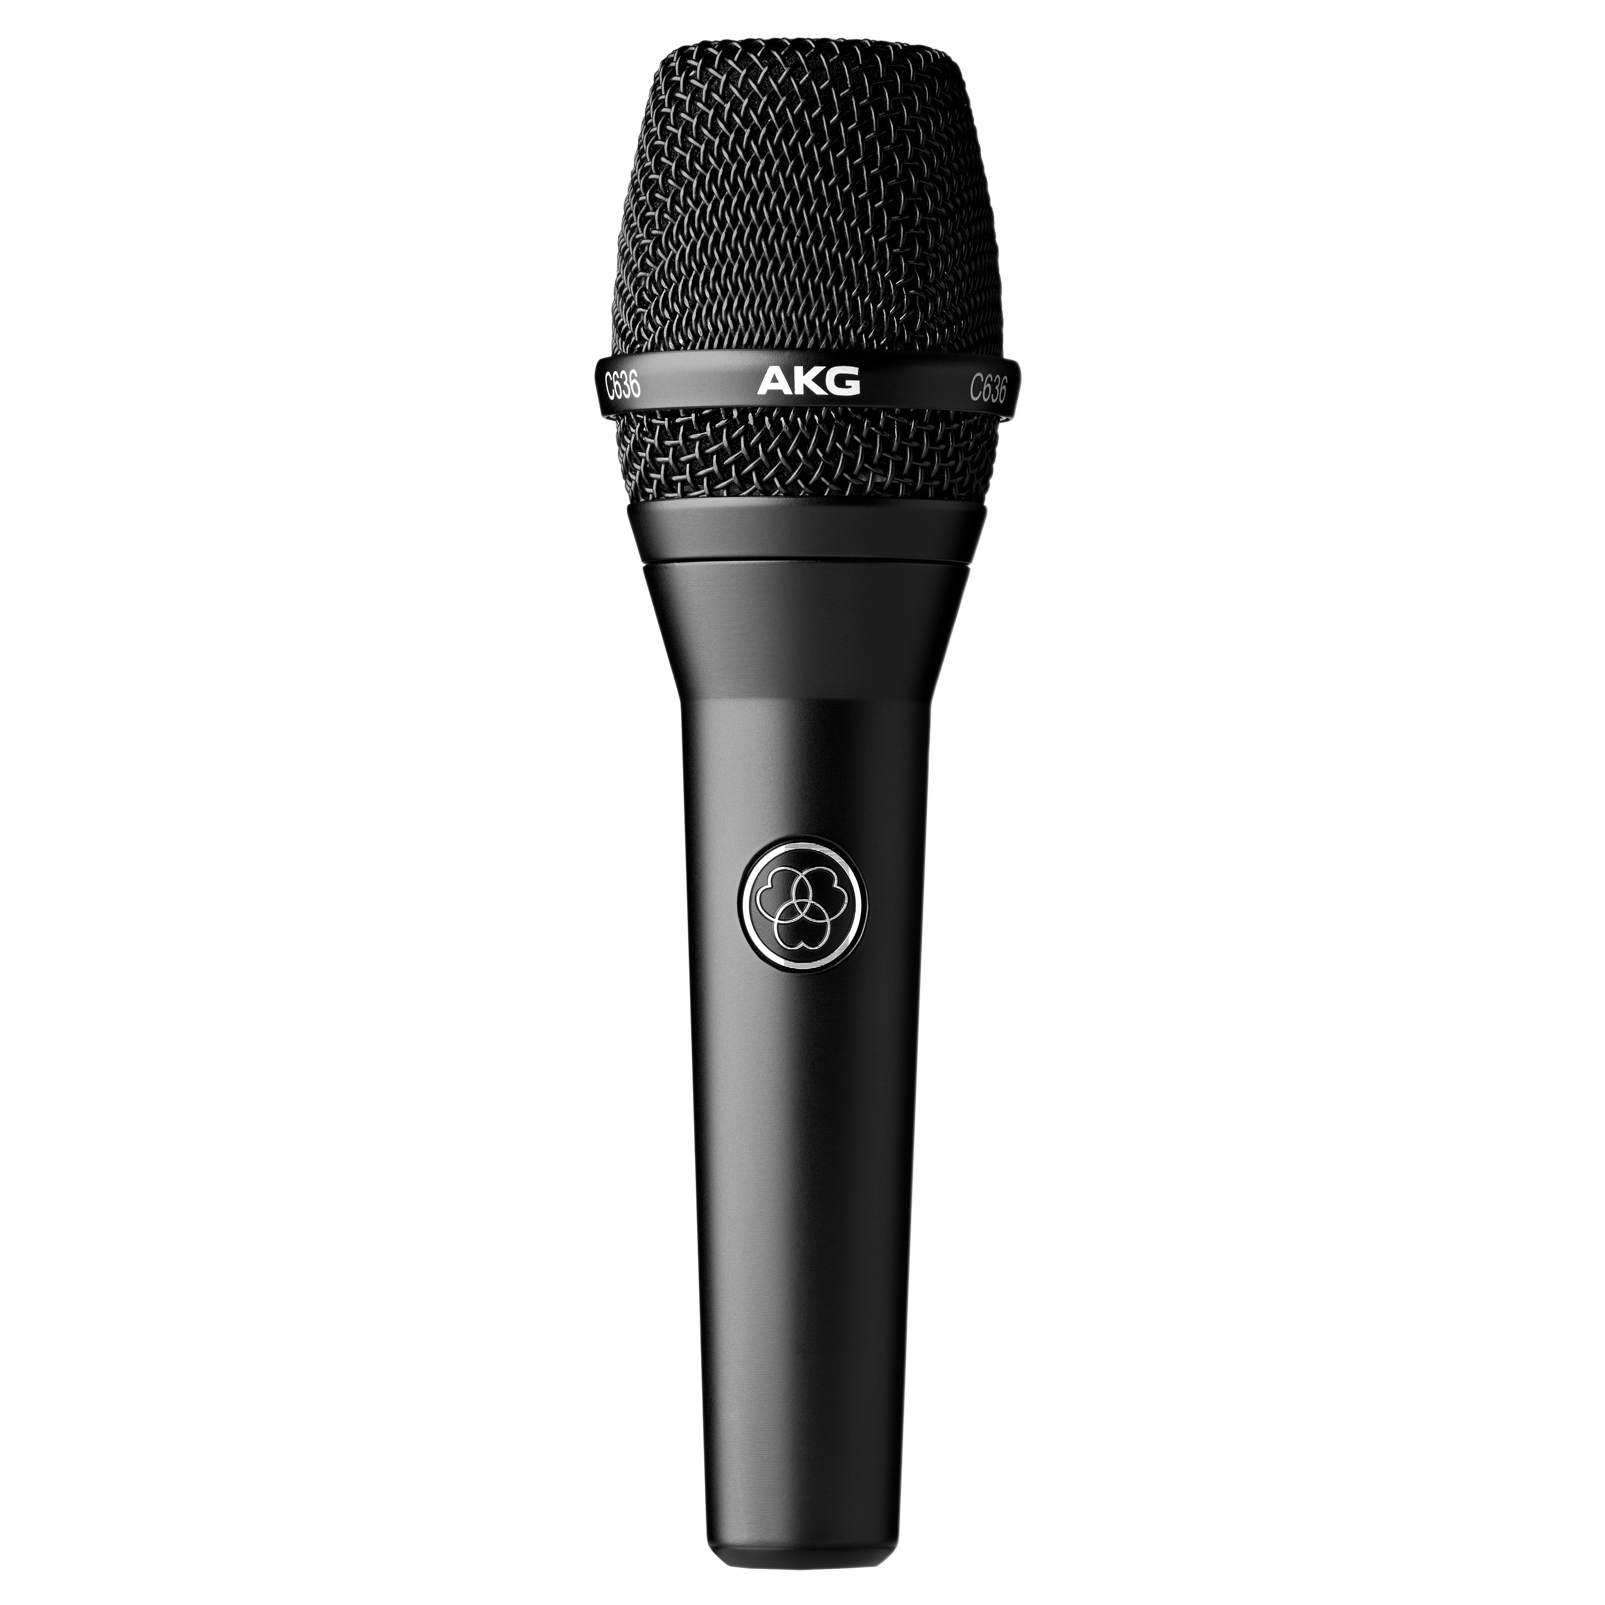 C636 - Black - Master reference condenser vocal microphone - Detailshot 1